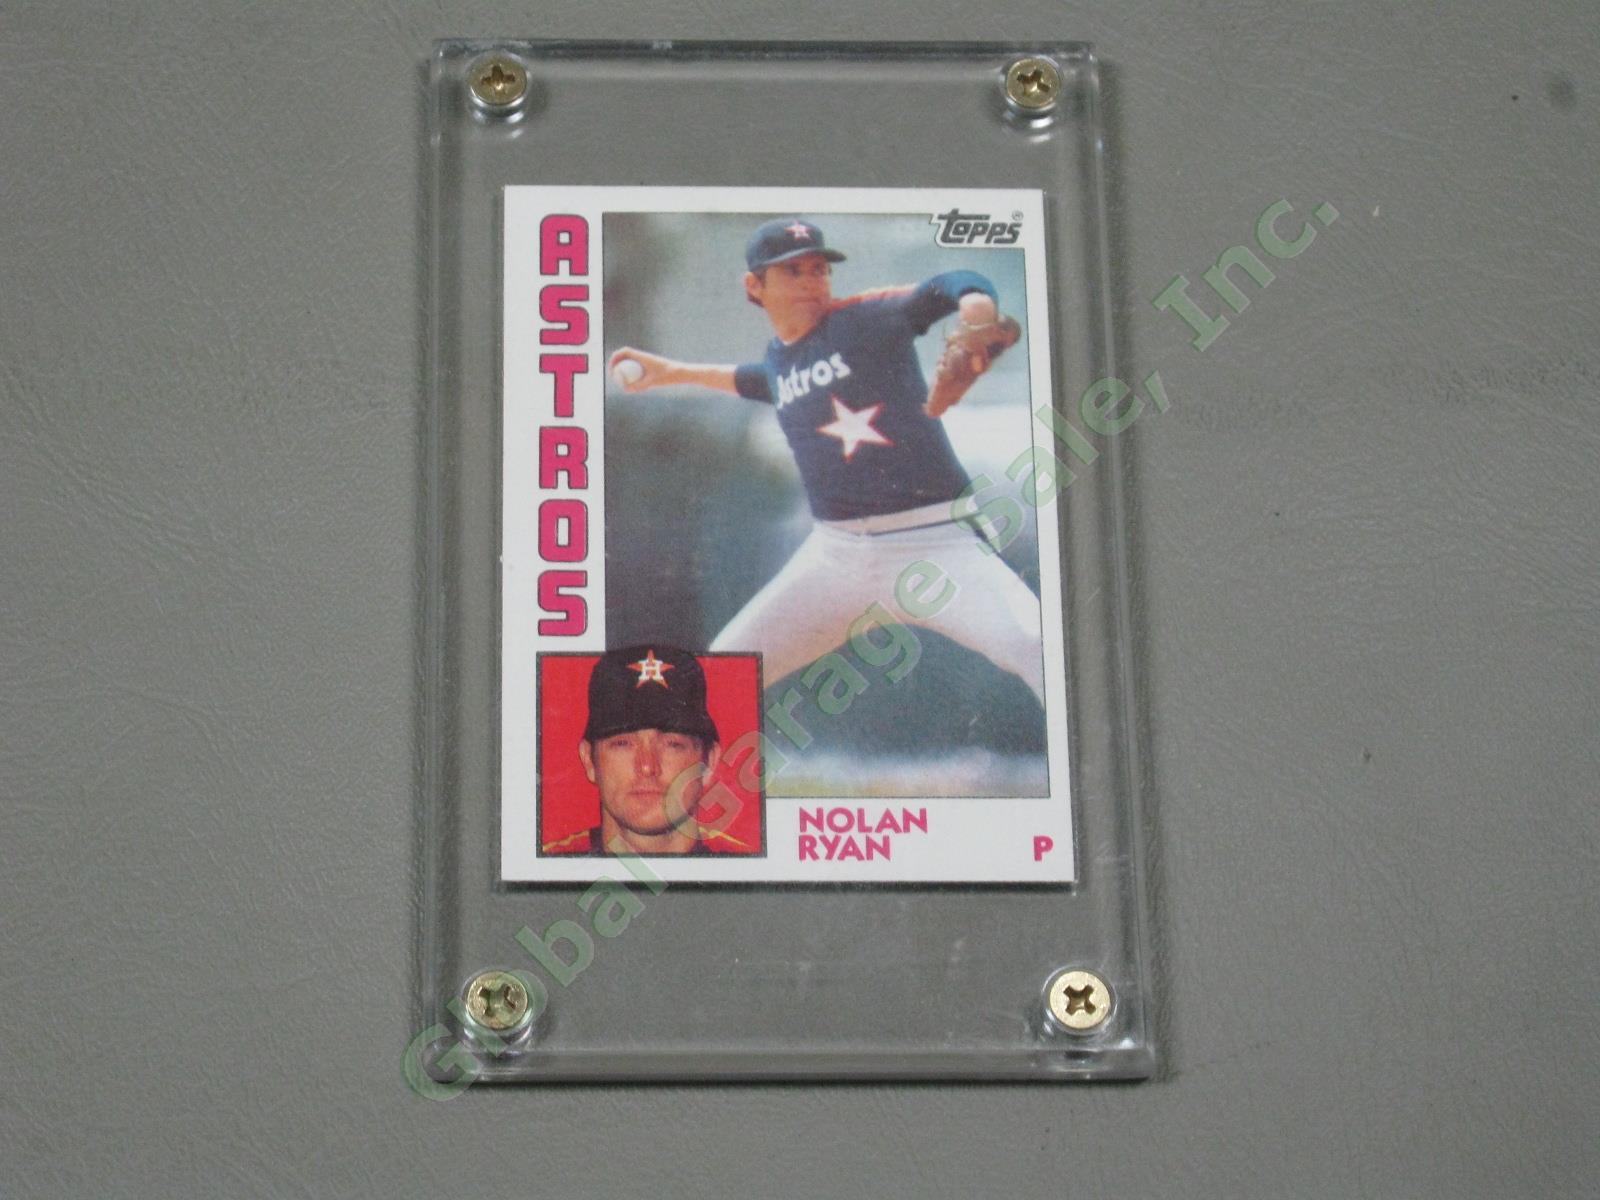 HUGE 3650+/- Vtg Nolan Ryan Baseball Card Lot 1984-1991 Topps Upper Deck #1 ++NR 2